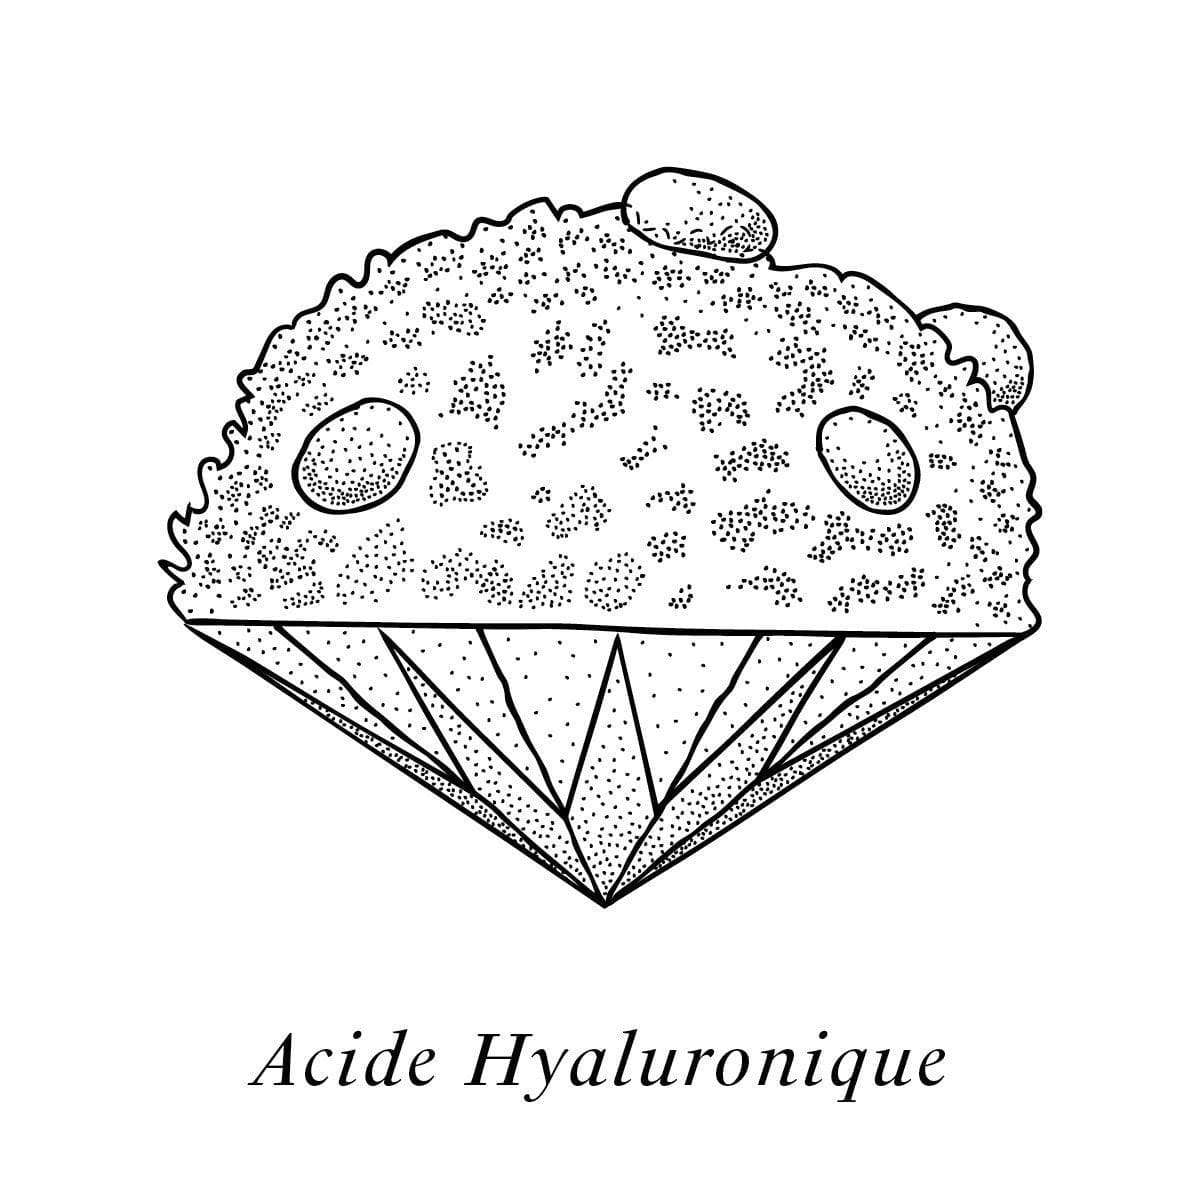 Illustration de l'acide hyaluronique, un des composants de la crème Claudius N°1, design ichetkar